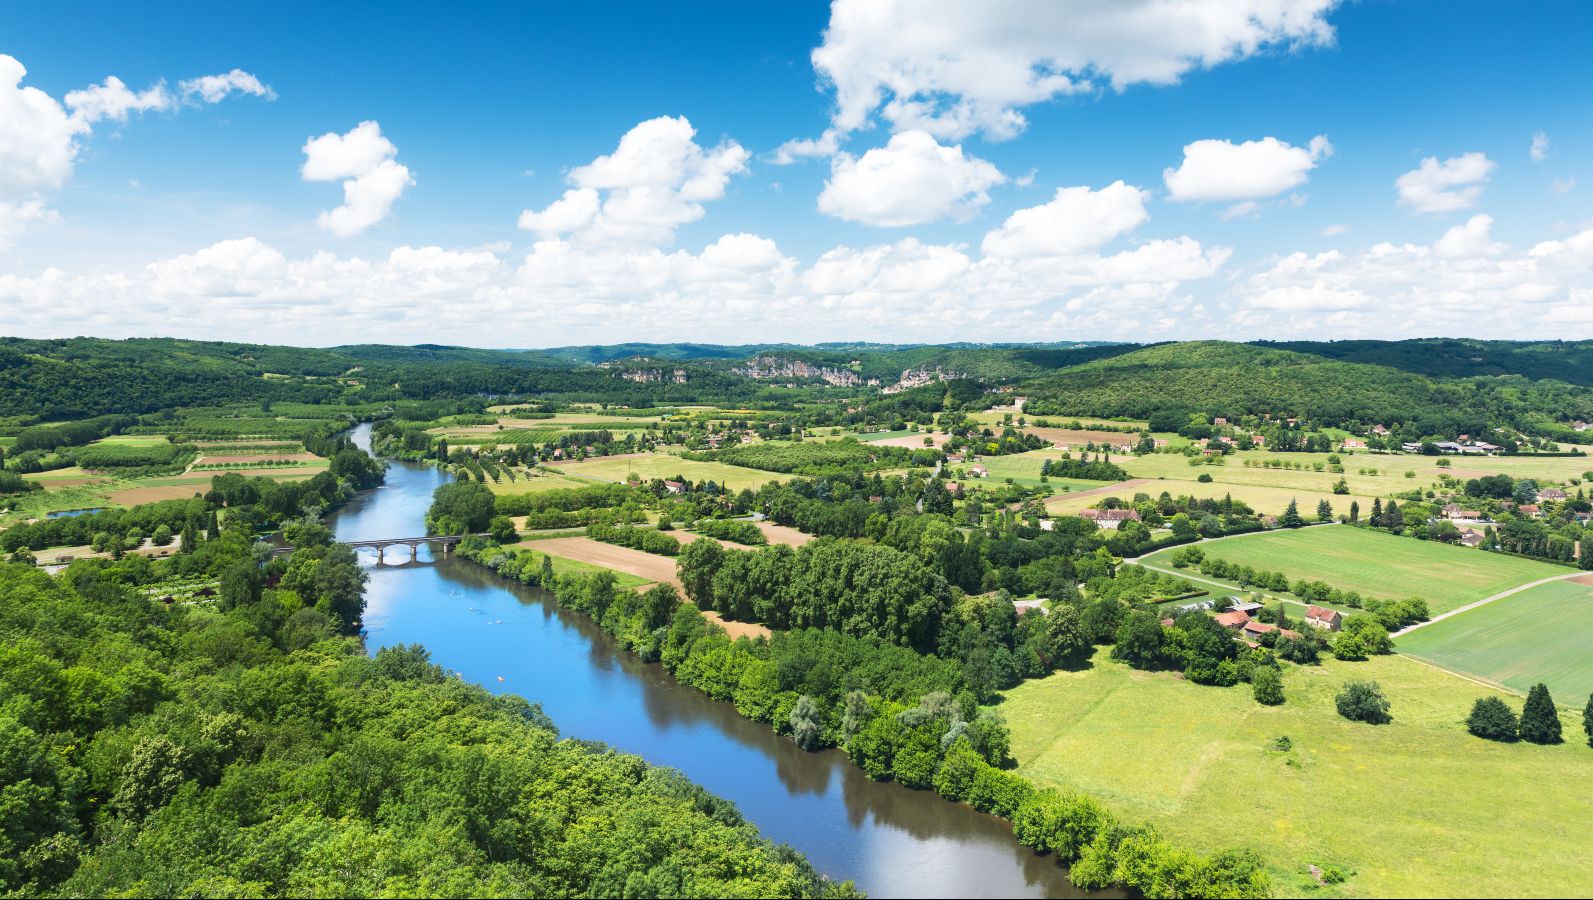 Panoramablick auf das Tal der Dordogne in Frankreich. Ein Fluss fließt durch eine Landschaft mit Feldern, Wäldern und kleineren Dörfern.